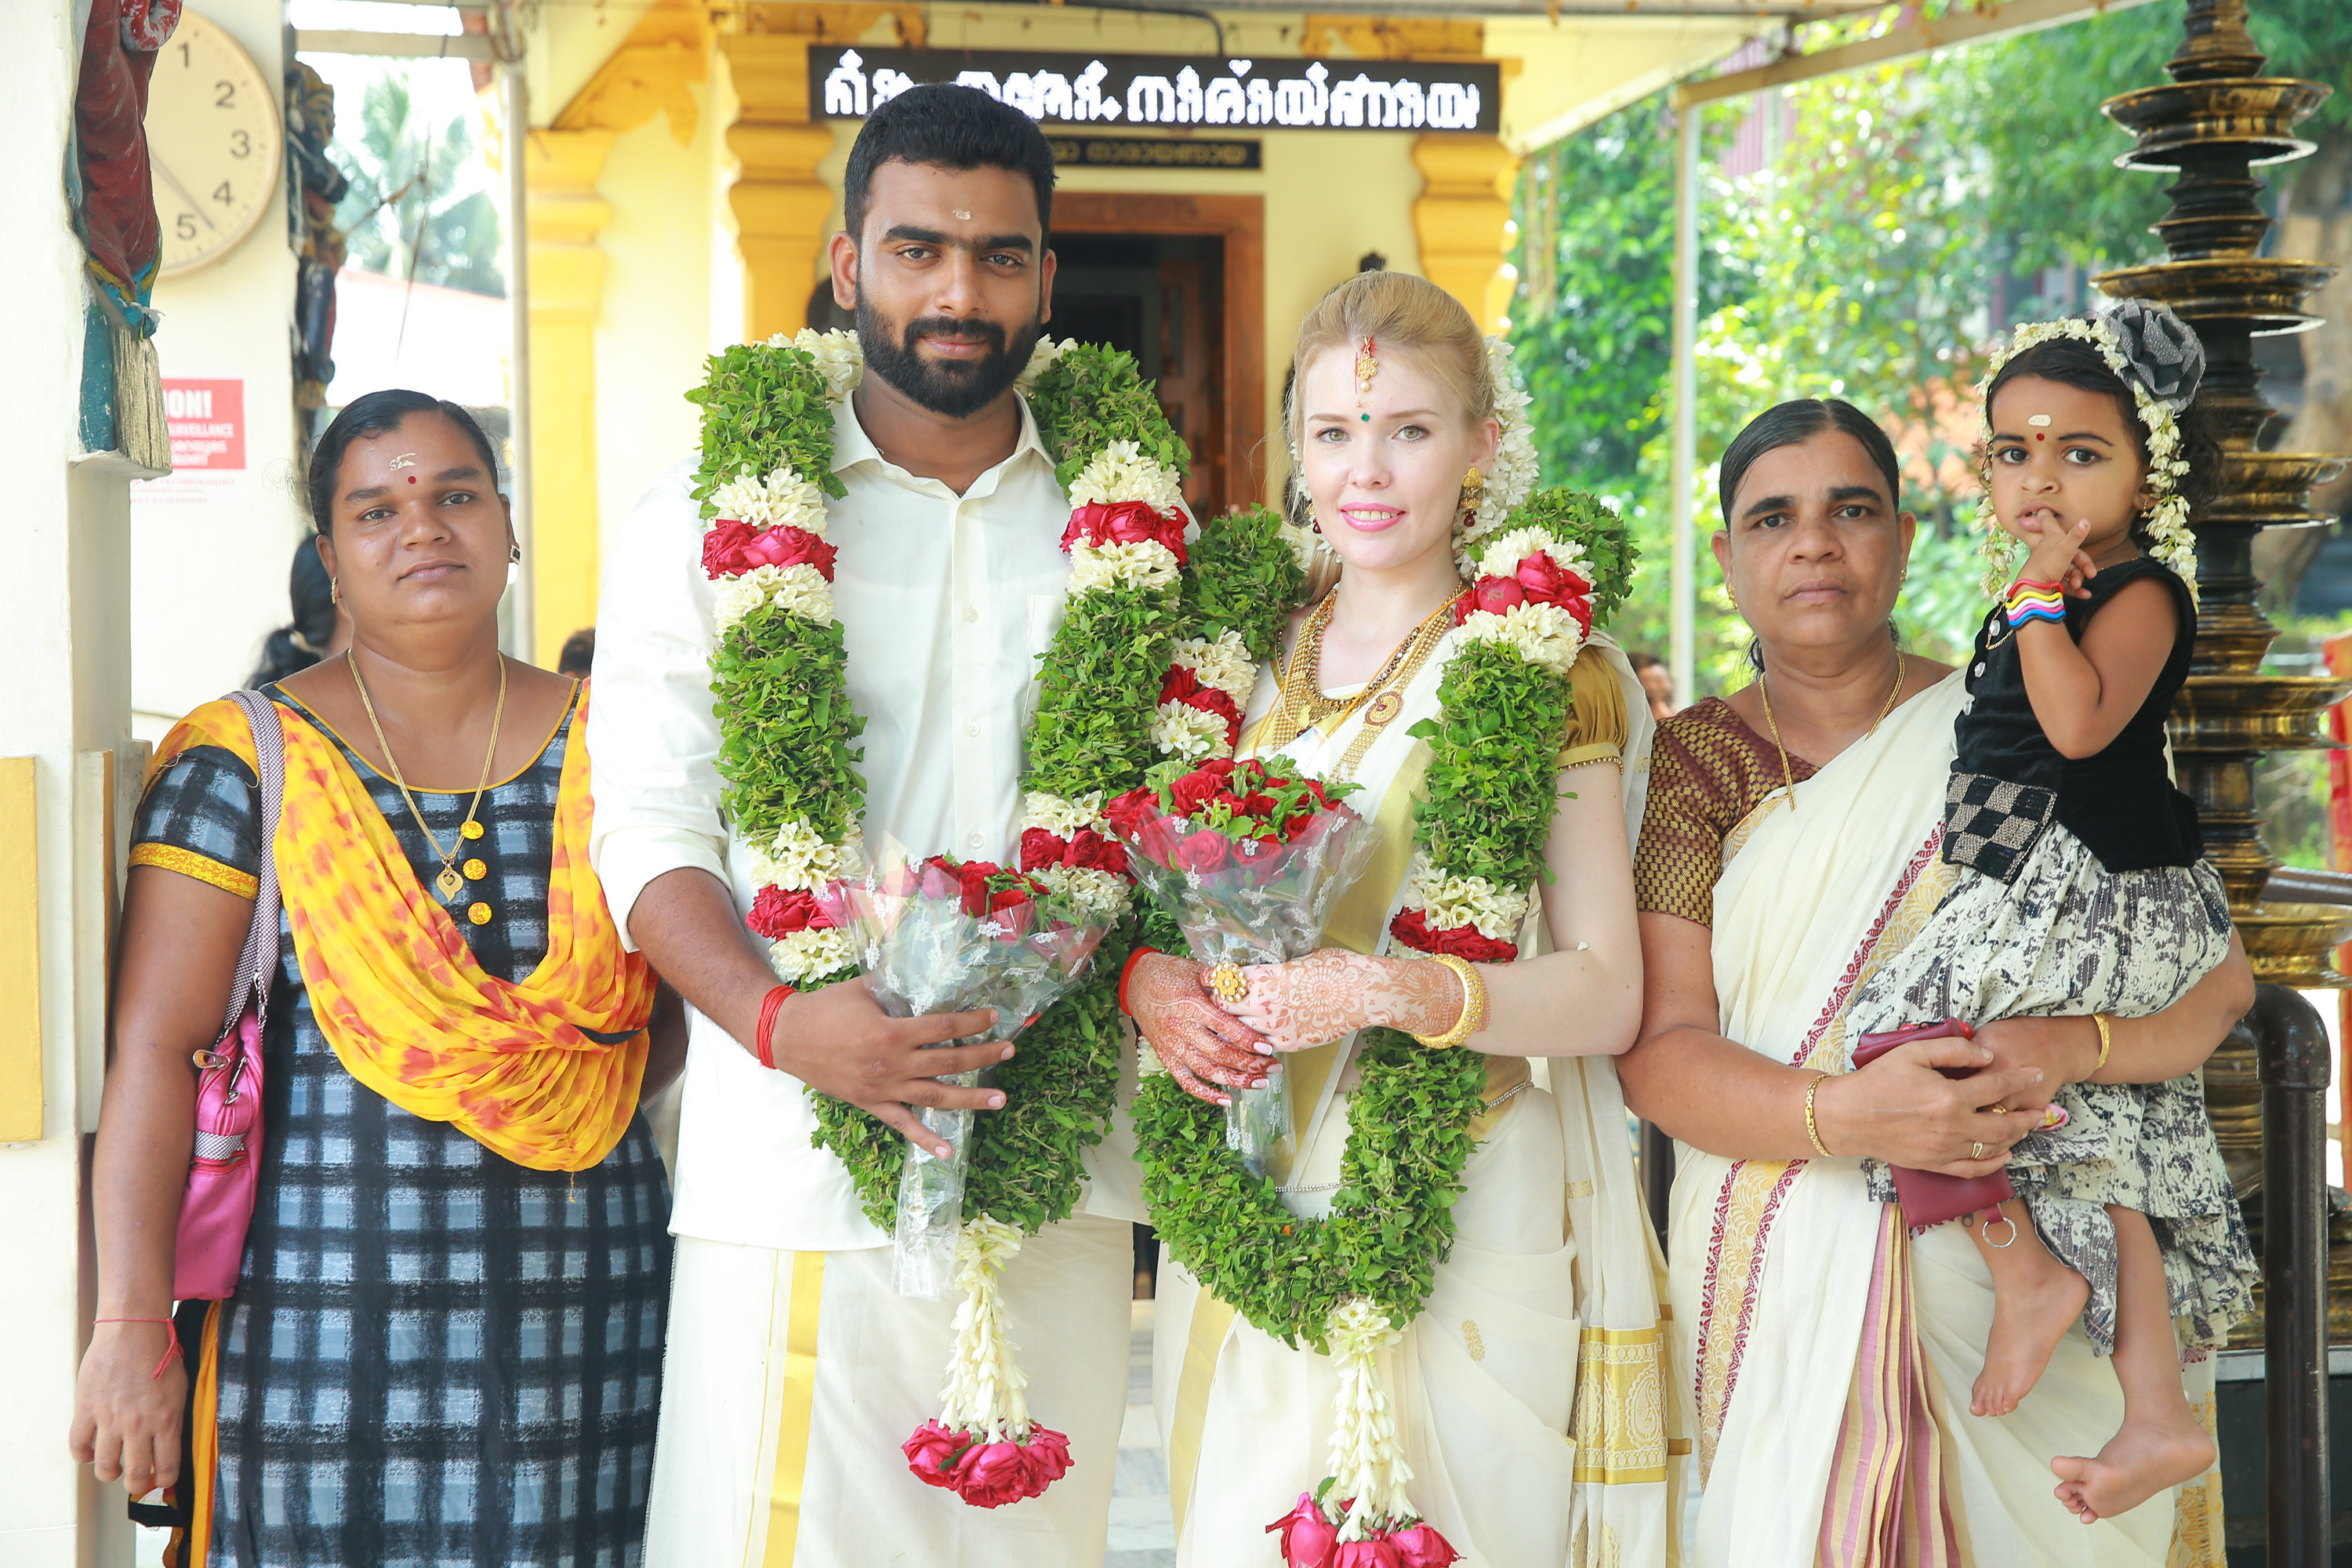 Свадьбу пара сыграла в Индии